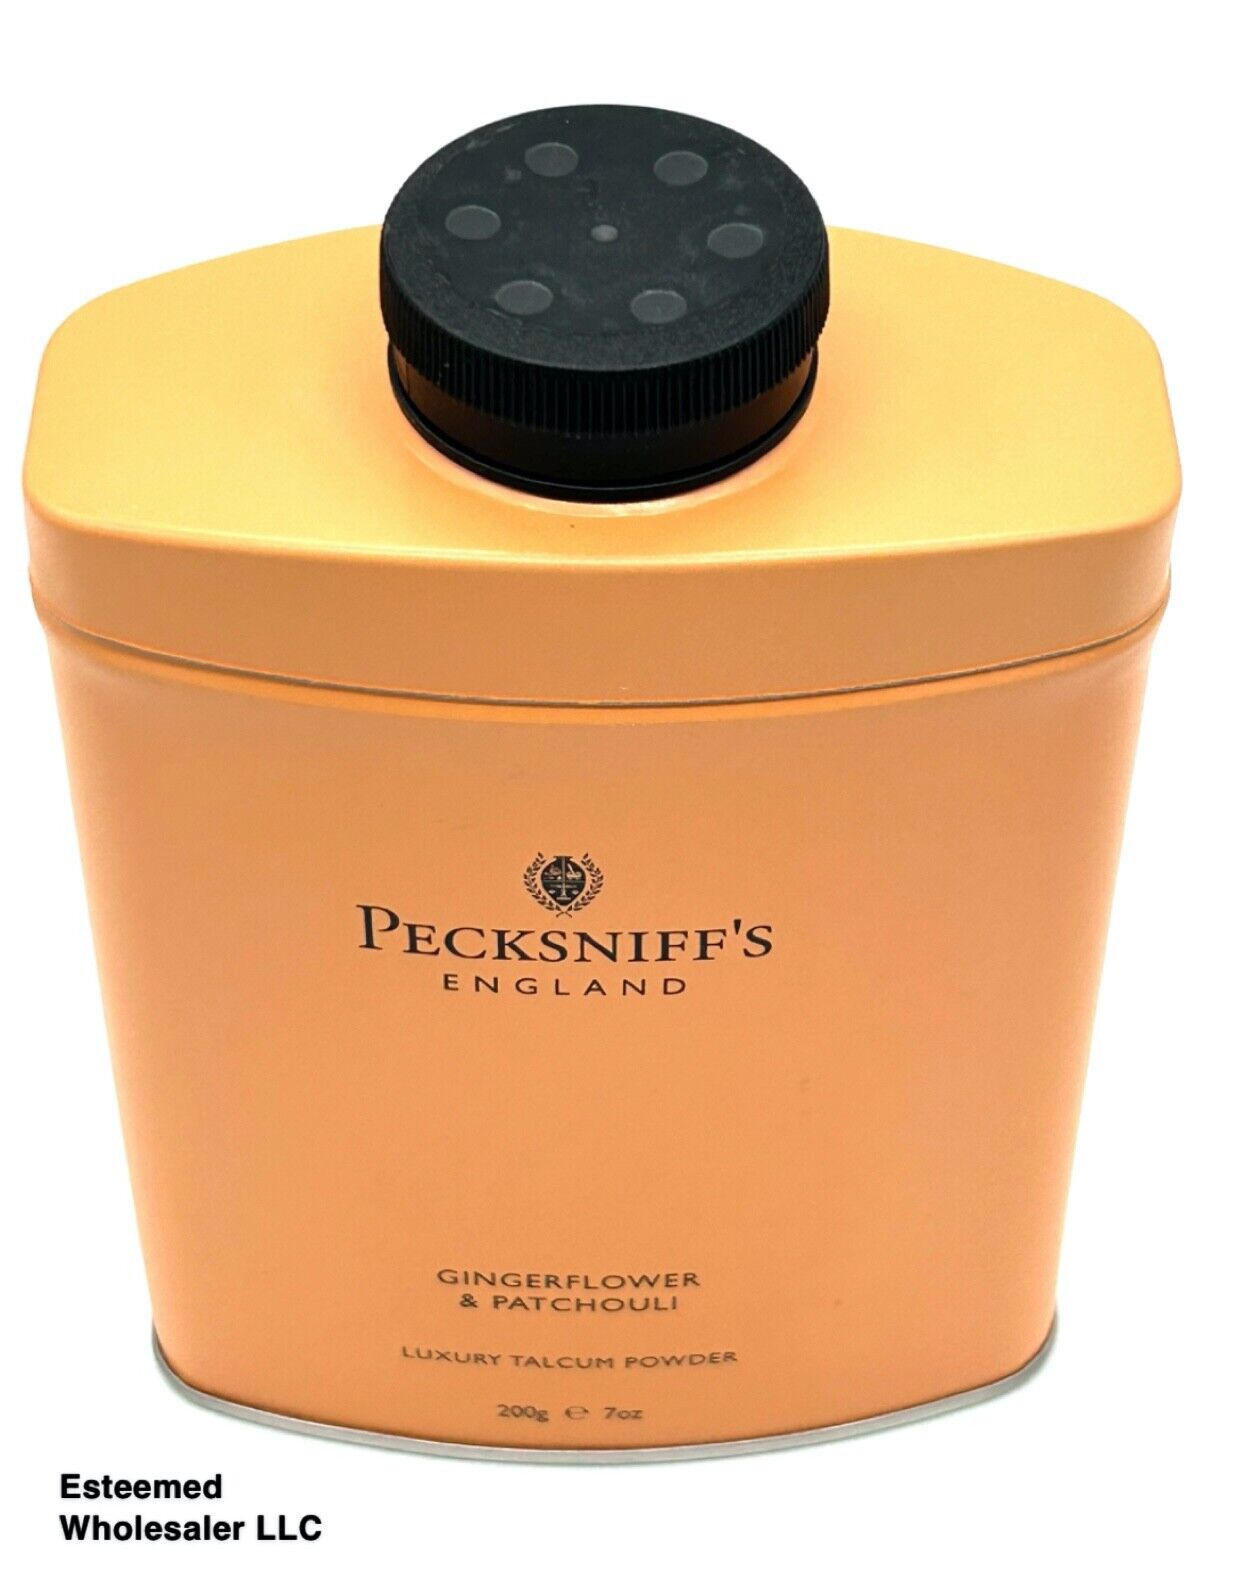 PECKSNIFFS England Gingerflower & Patchouli Luxury Talcum Powder 7oz w/o box